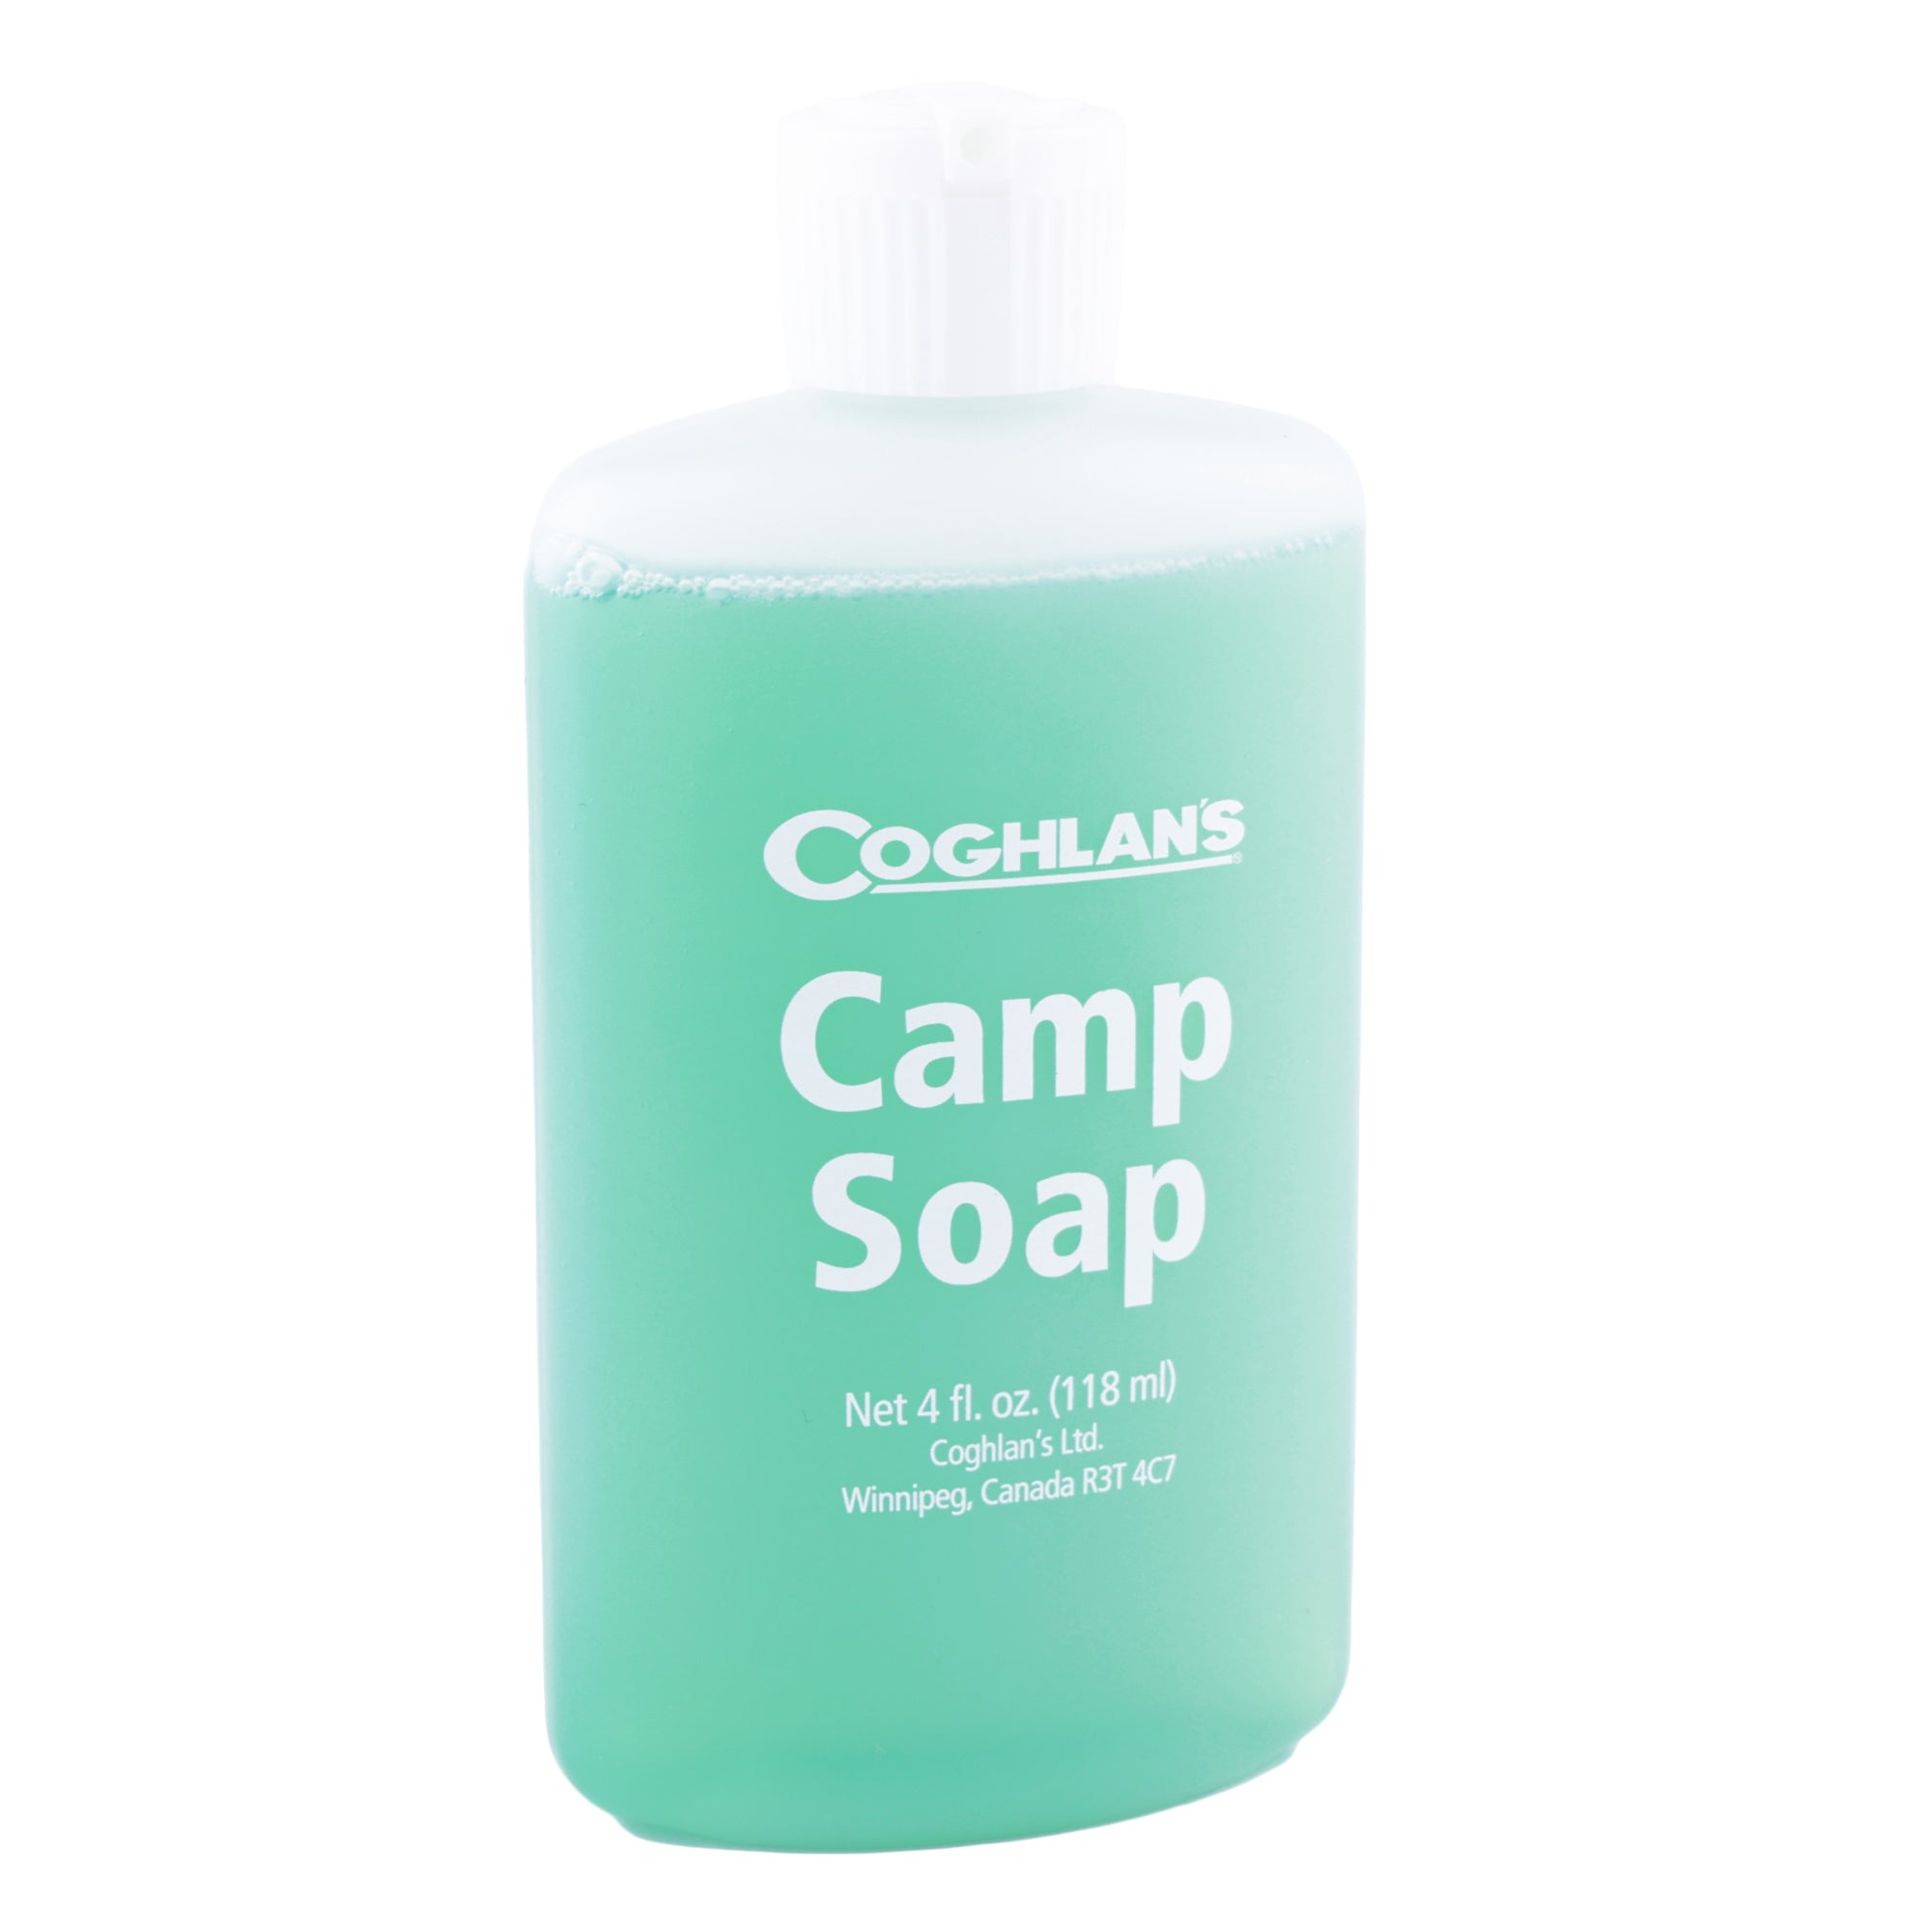 Camp Craft Mix – Benjamin Soap Co.